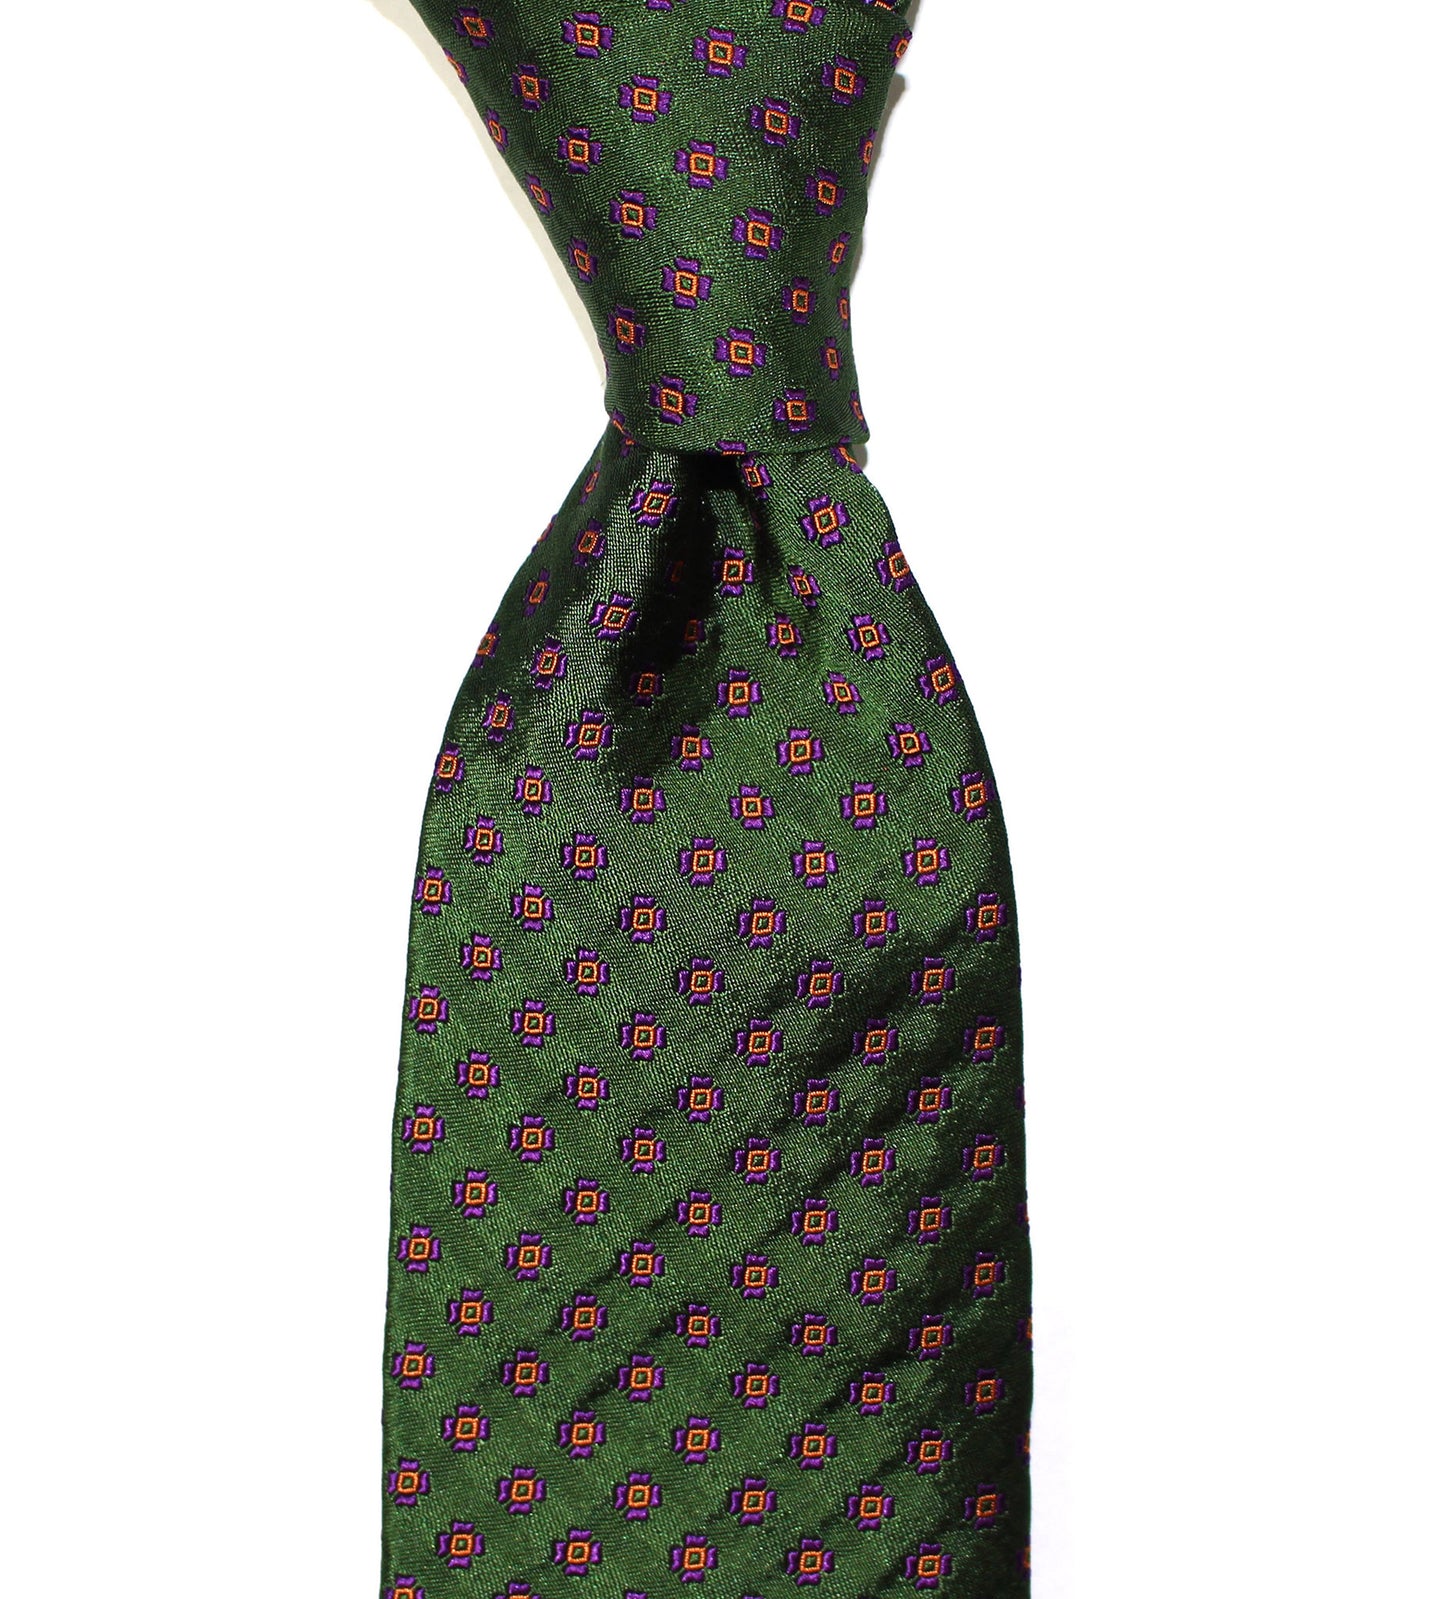 Premium Italian Silk Seven - Fold Neckties by Sette Neckwear